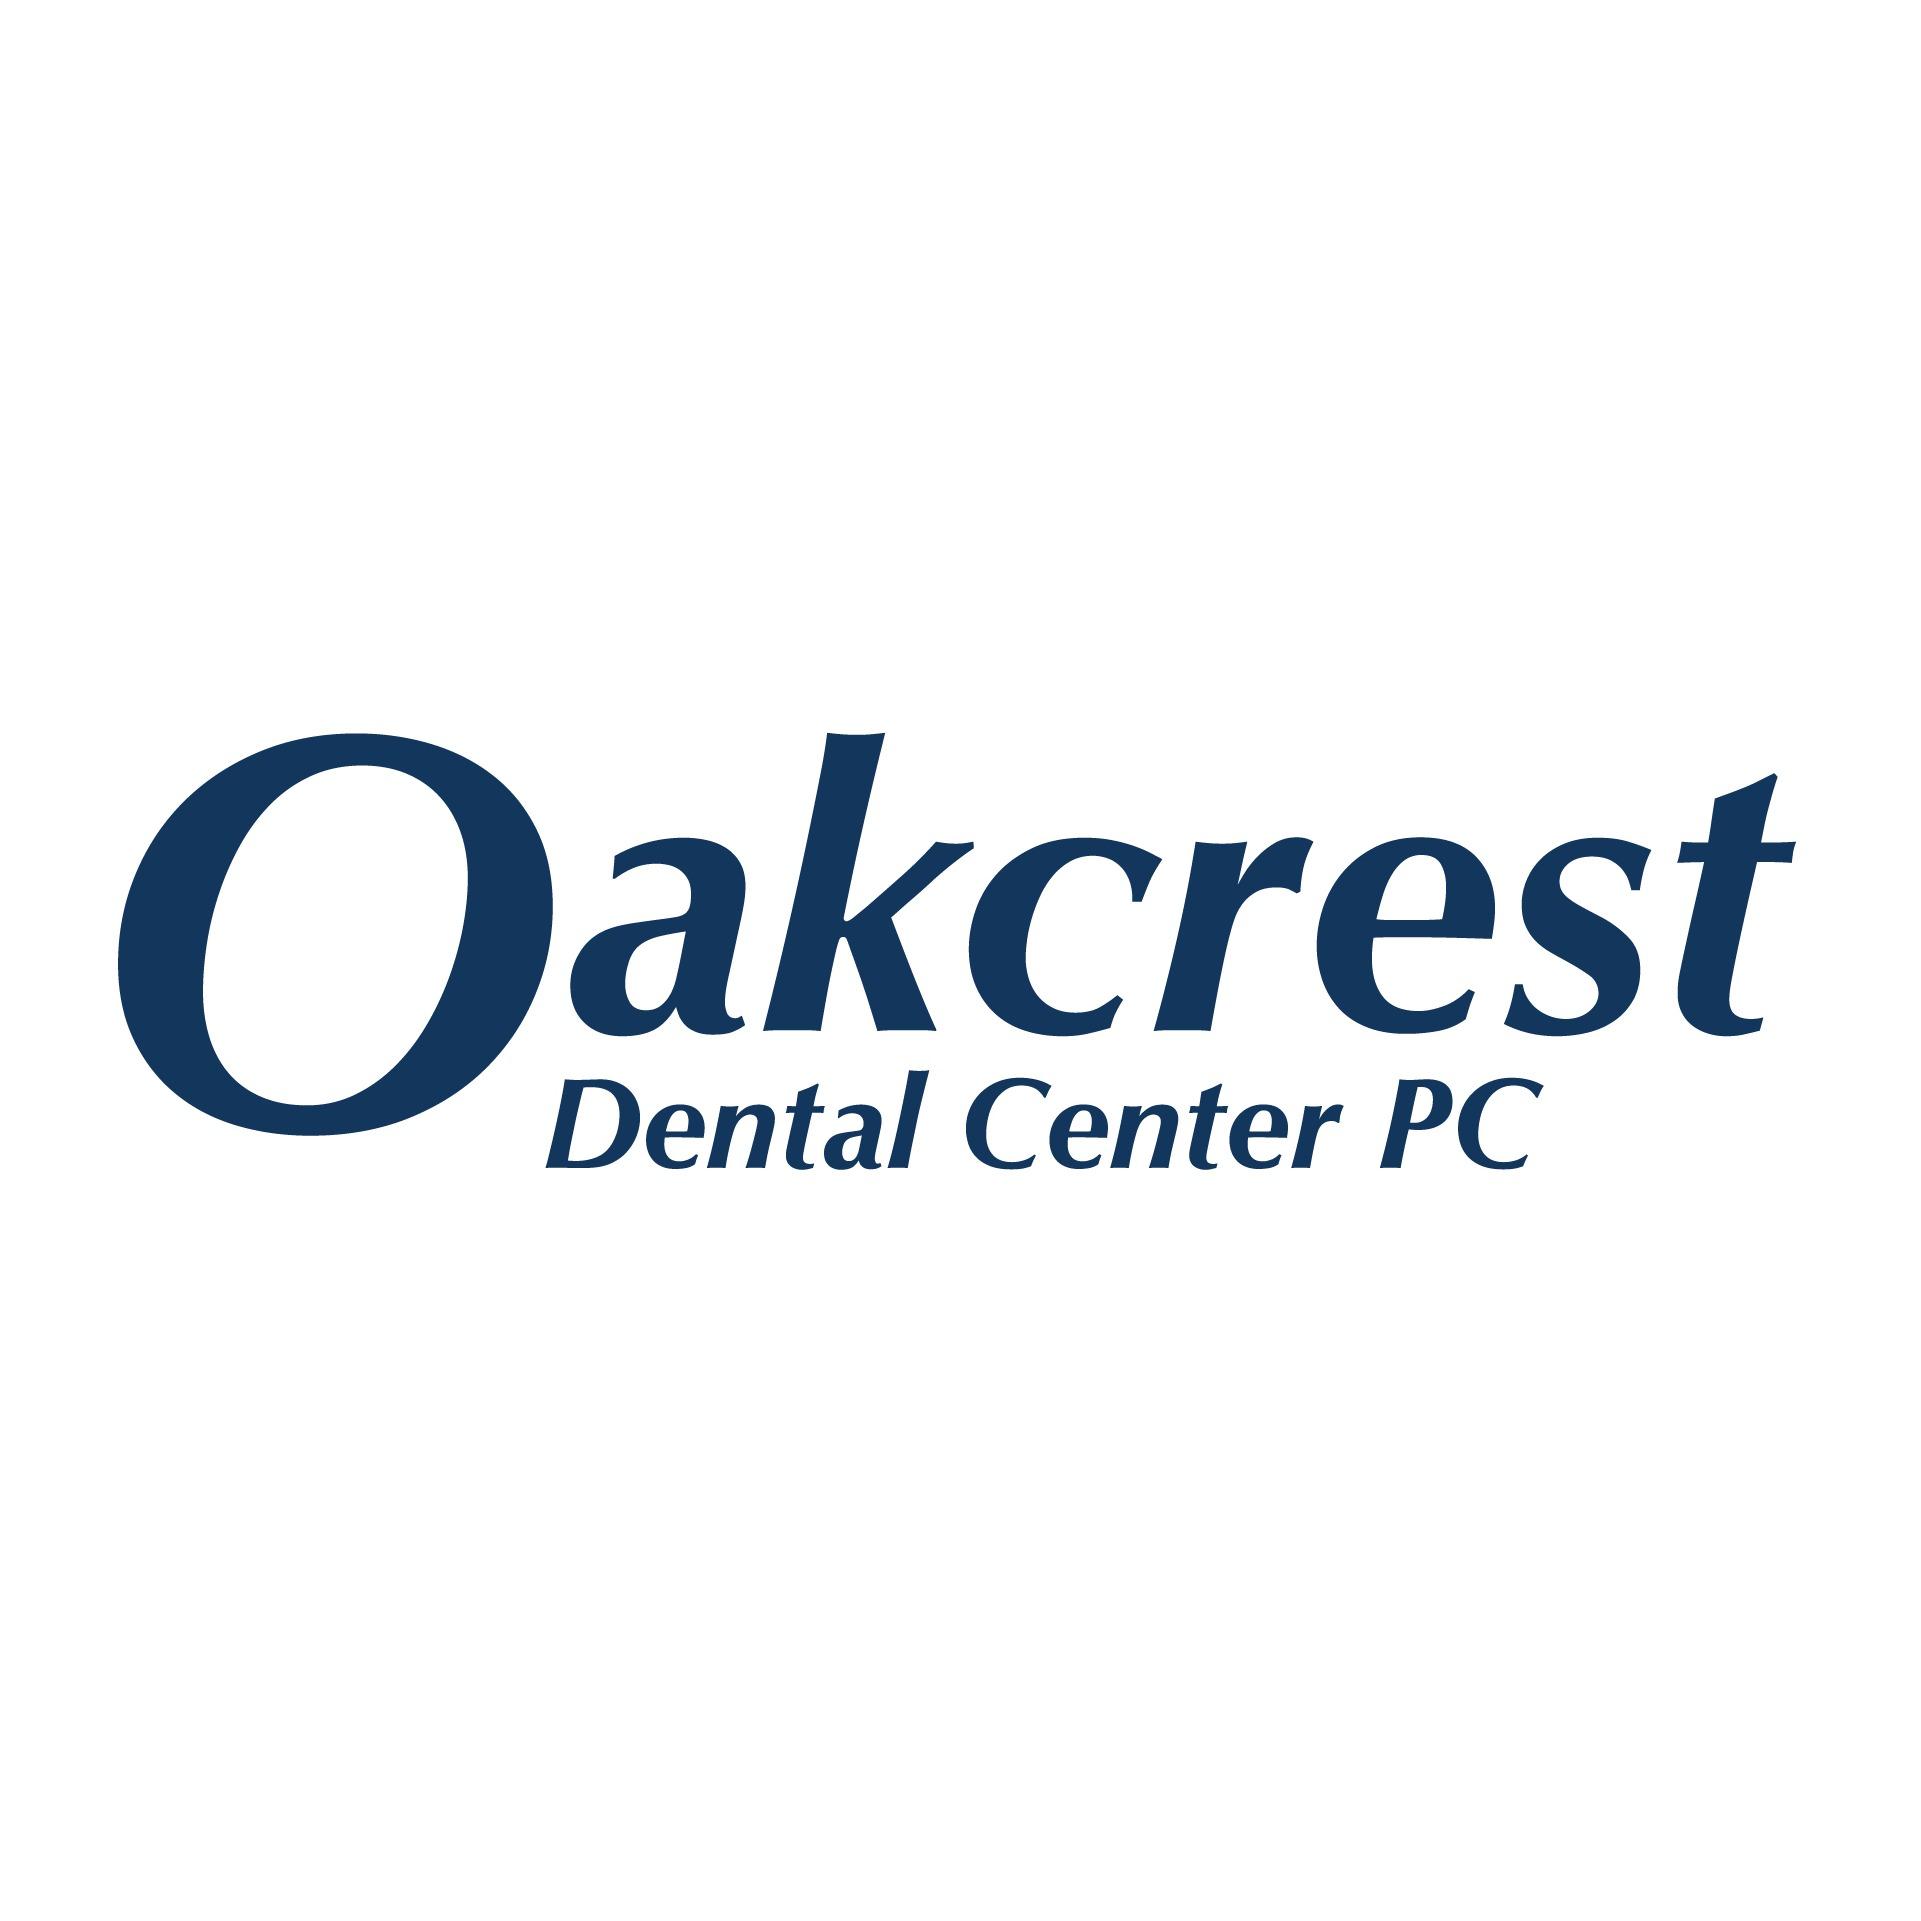 Oakcrest Dental Center